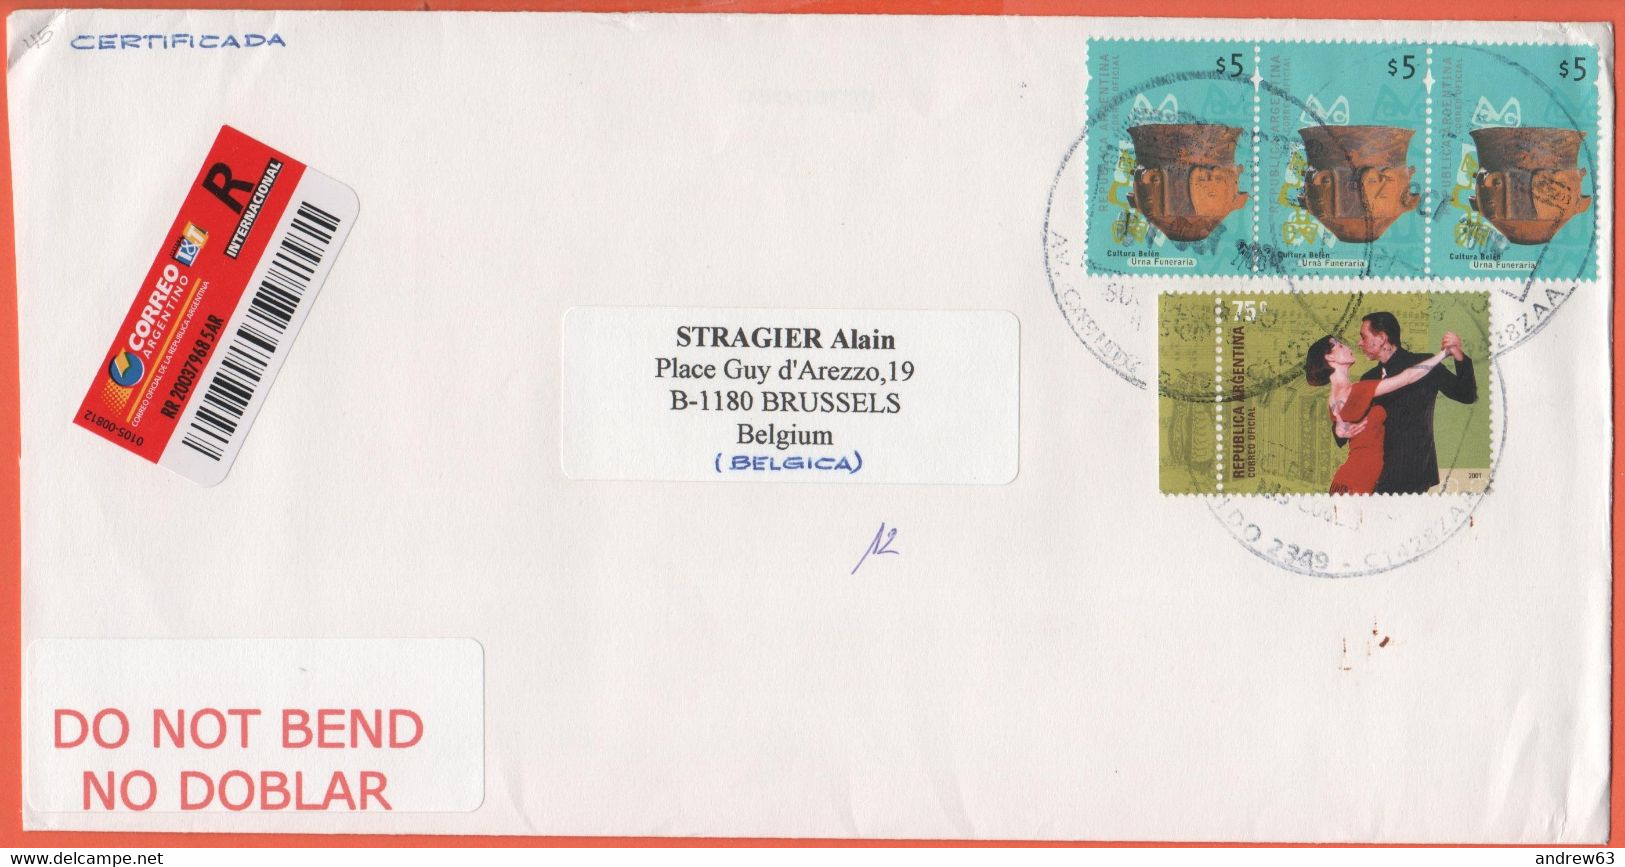 ARGENTINA - 2004 - 4 Stamps - Registered - Medium Envelope - Viaggiata Da Buenos Aires Per Bruxelles, Belgium - Briefe U. Dokumente